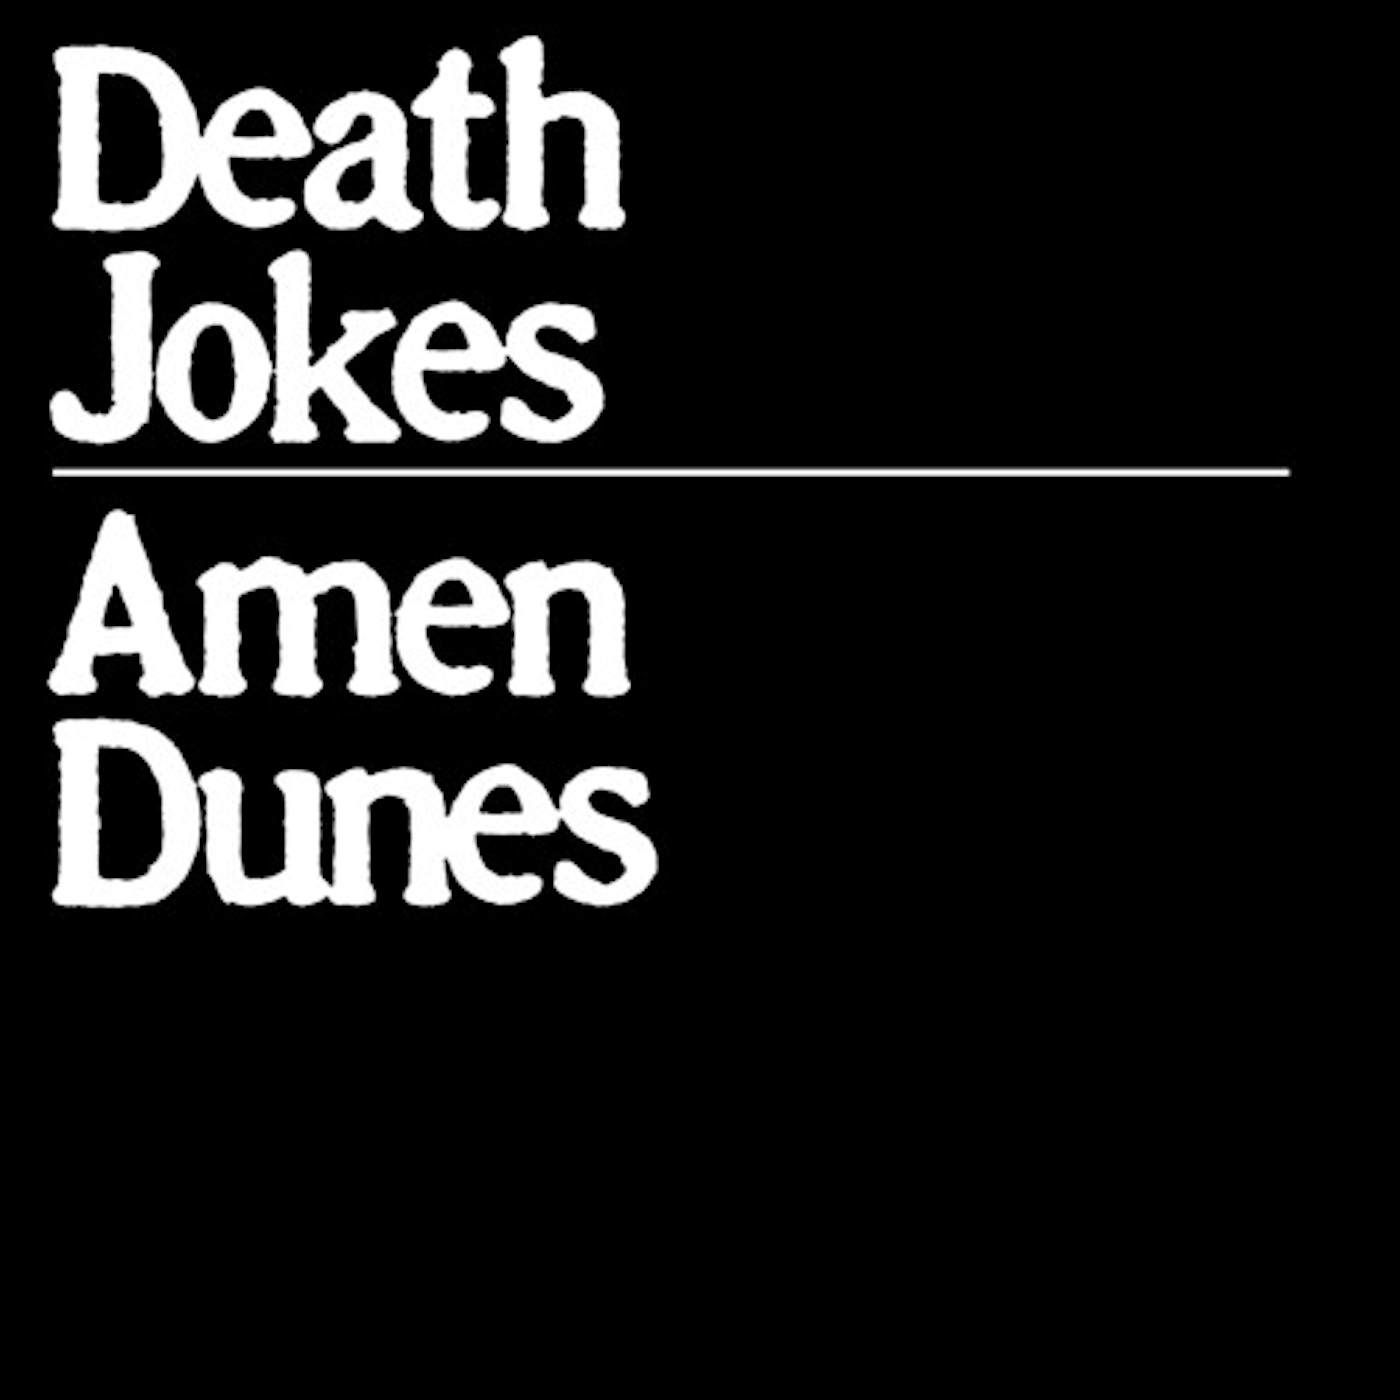 Amen Dunes DEATH JOKES Vinyl Record - Colored Vinyl, Clear Vinyl, Gatefold Sleeve